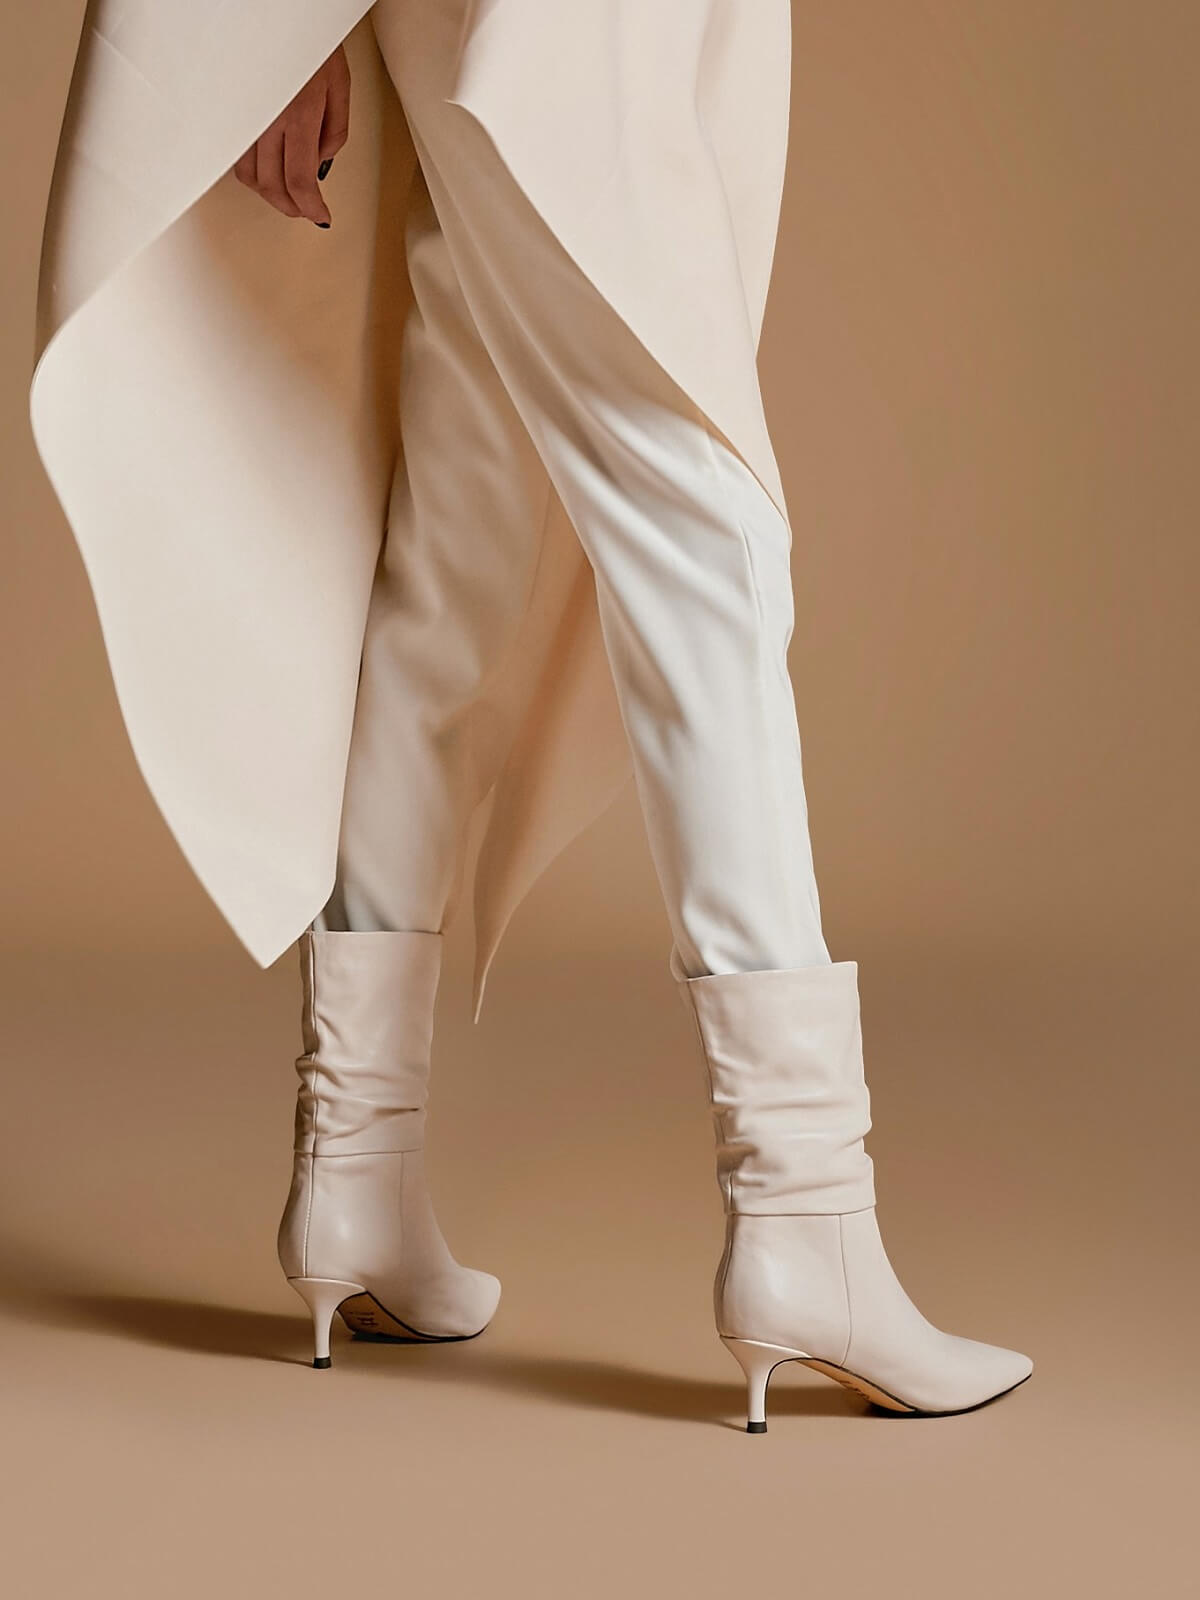 LEHOOR Kitten Heel White Mid Calf Sock Boots Women